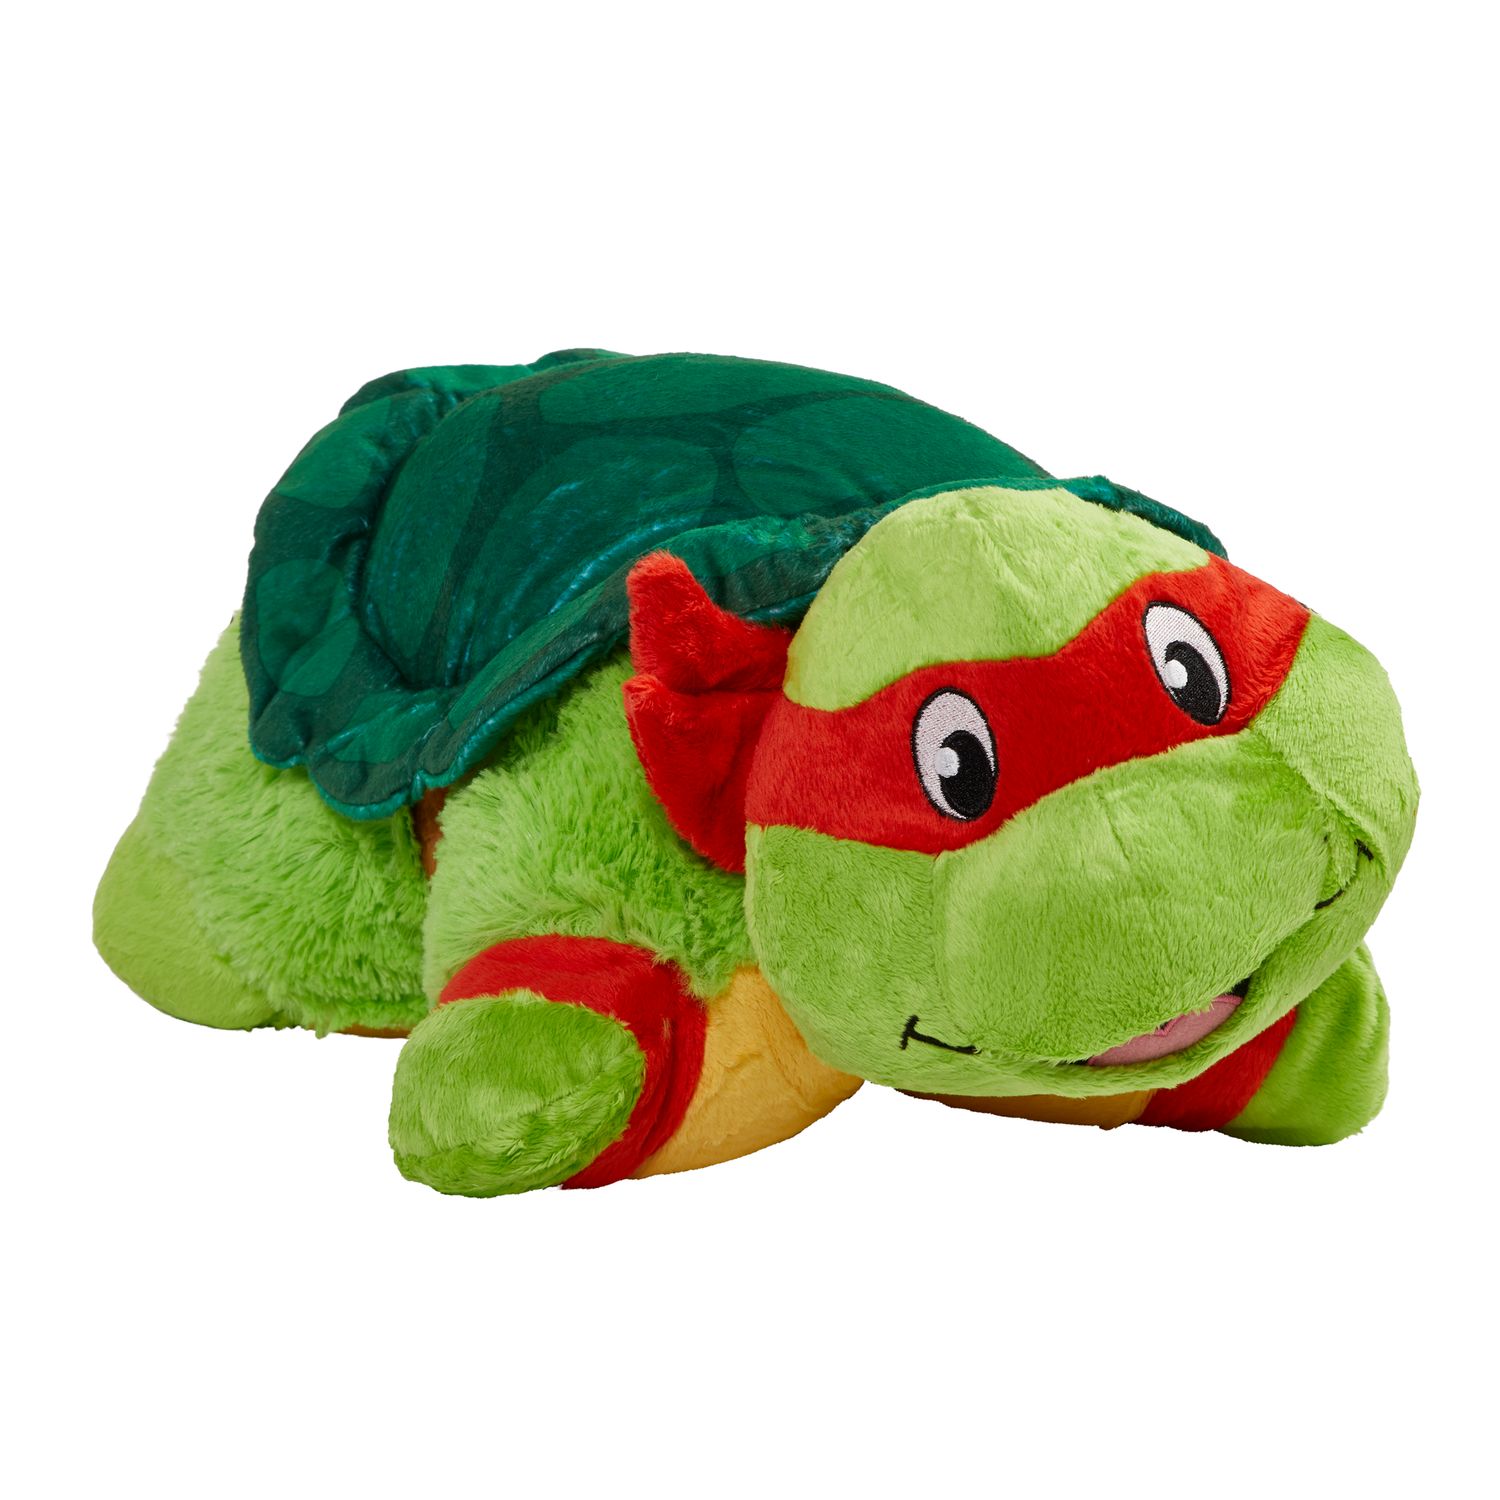 raphael ninja turtle stuffed animal